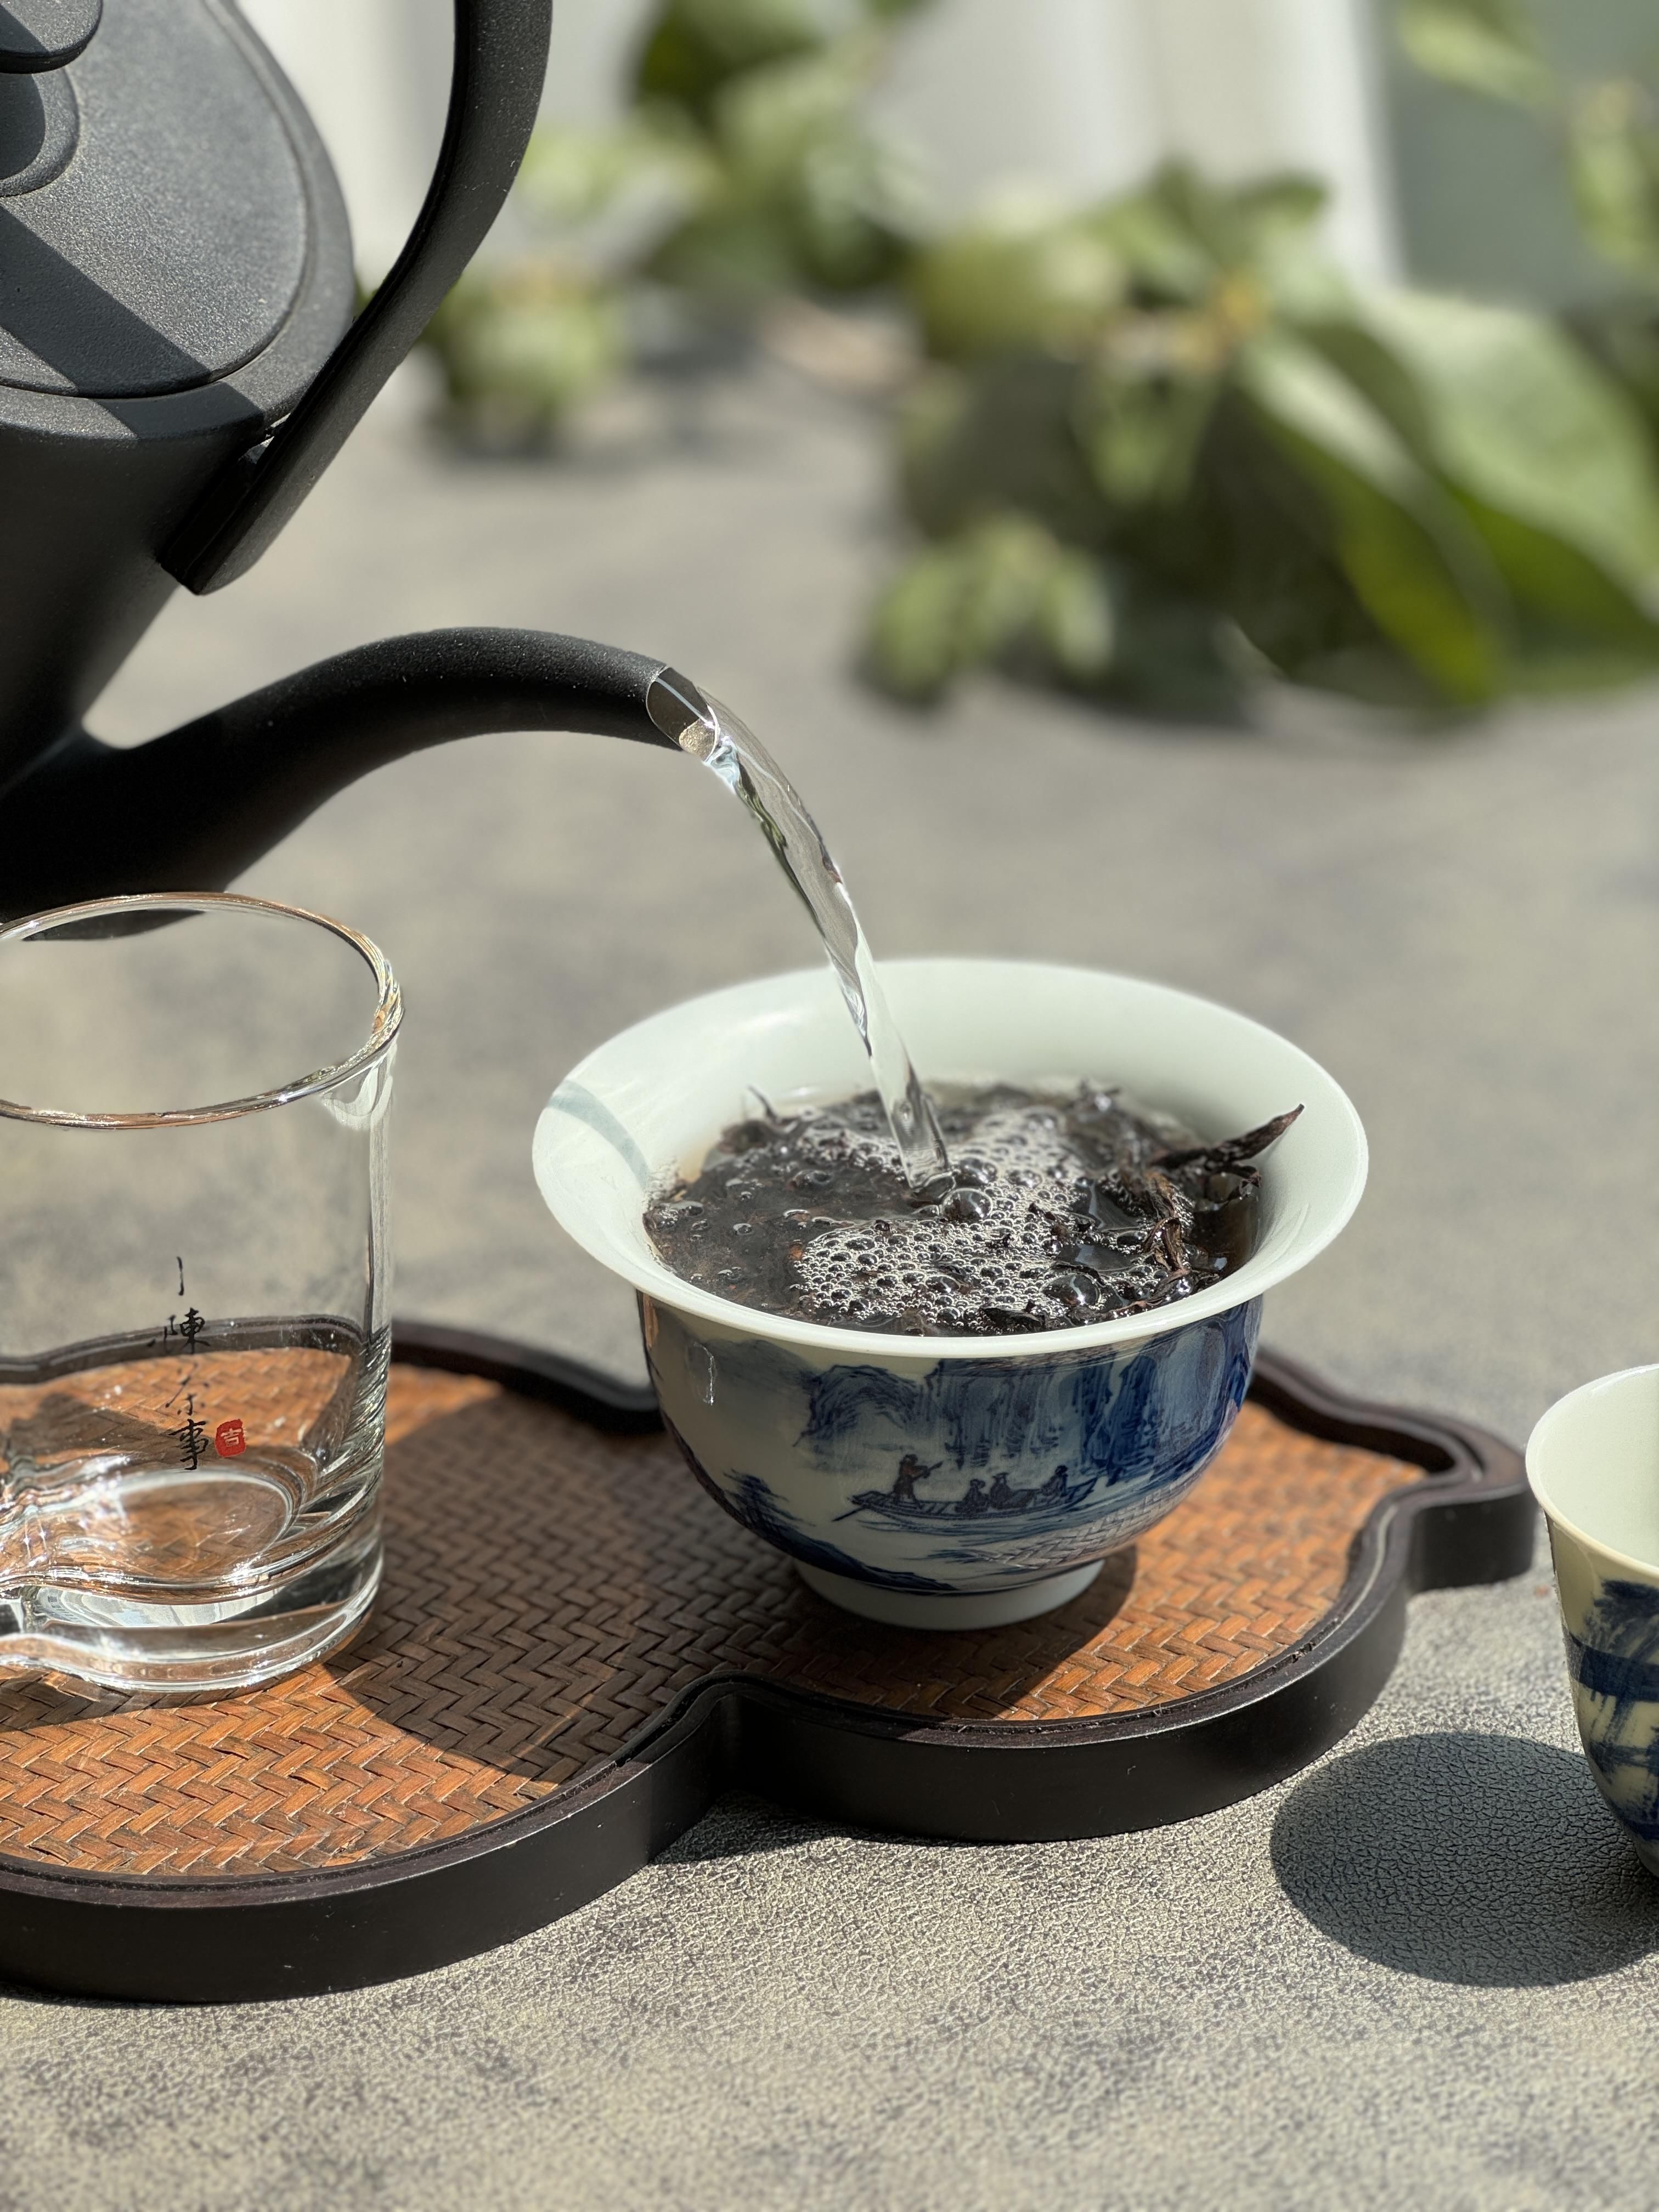 玻璃杯、盖碗泡、煮茶，一个人喝白茶，哪种方式才zui方便省茶？